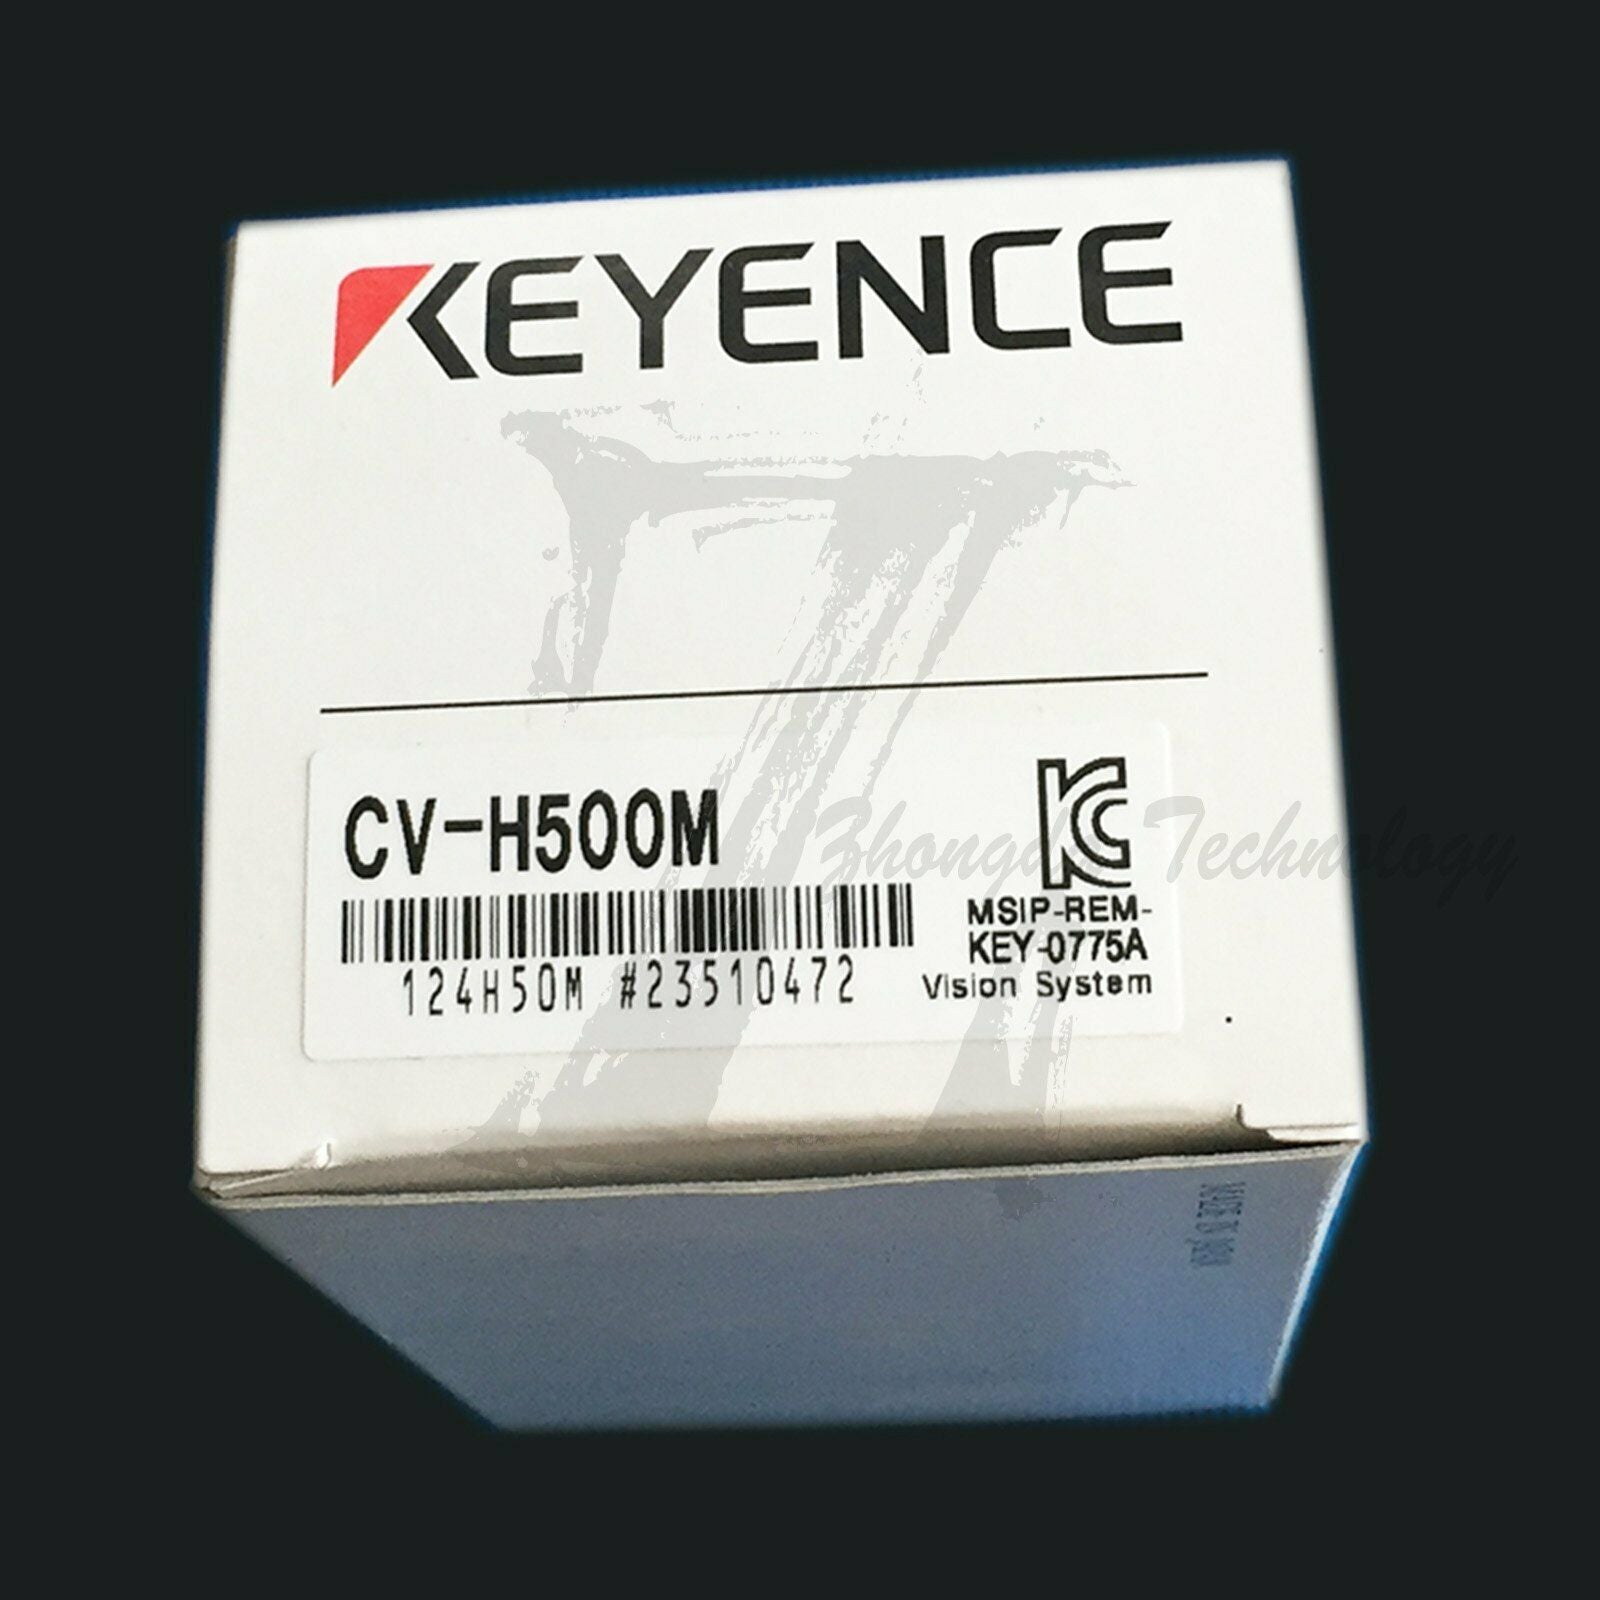 جديد في الصندوق 1 قطعة كاميرا KEYENCE CV-H500M ضمان لمدة سنة واحدة CVH500M